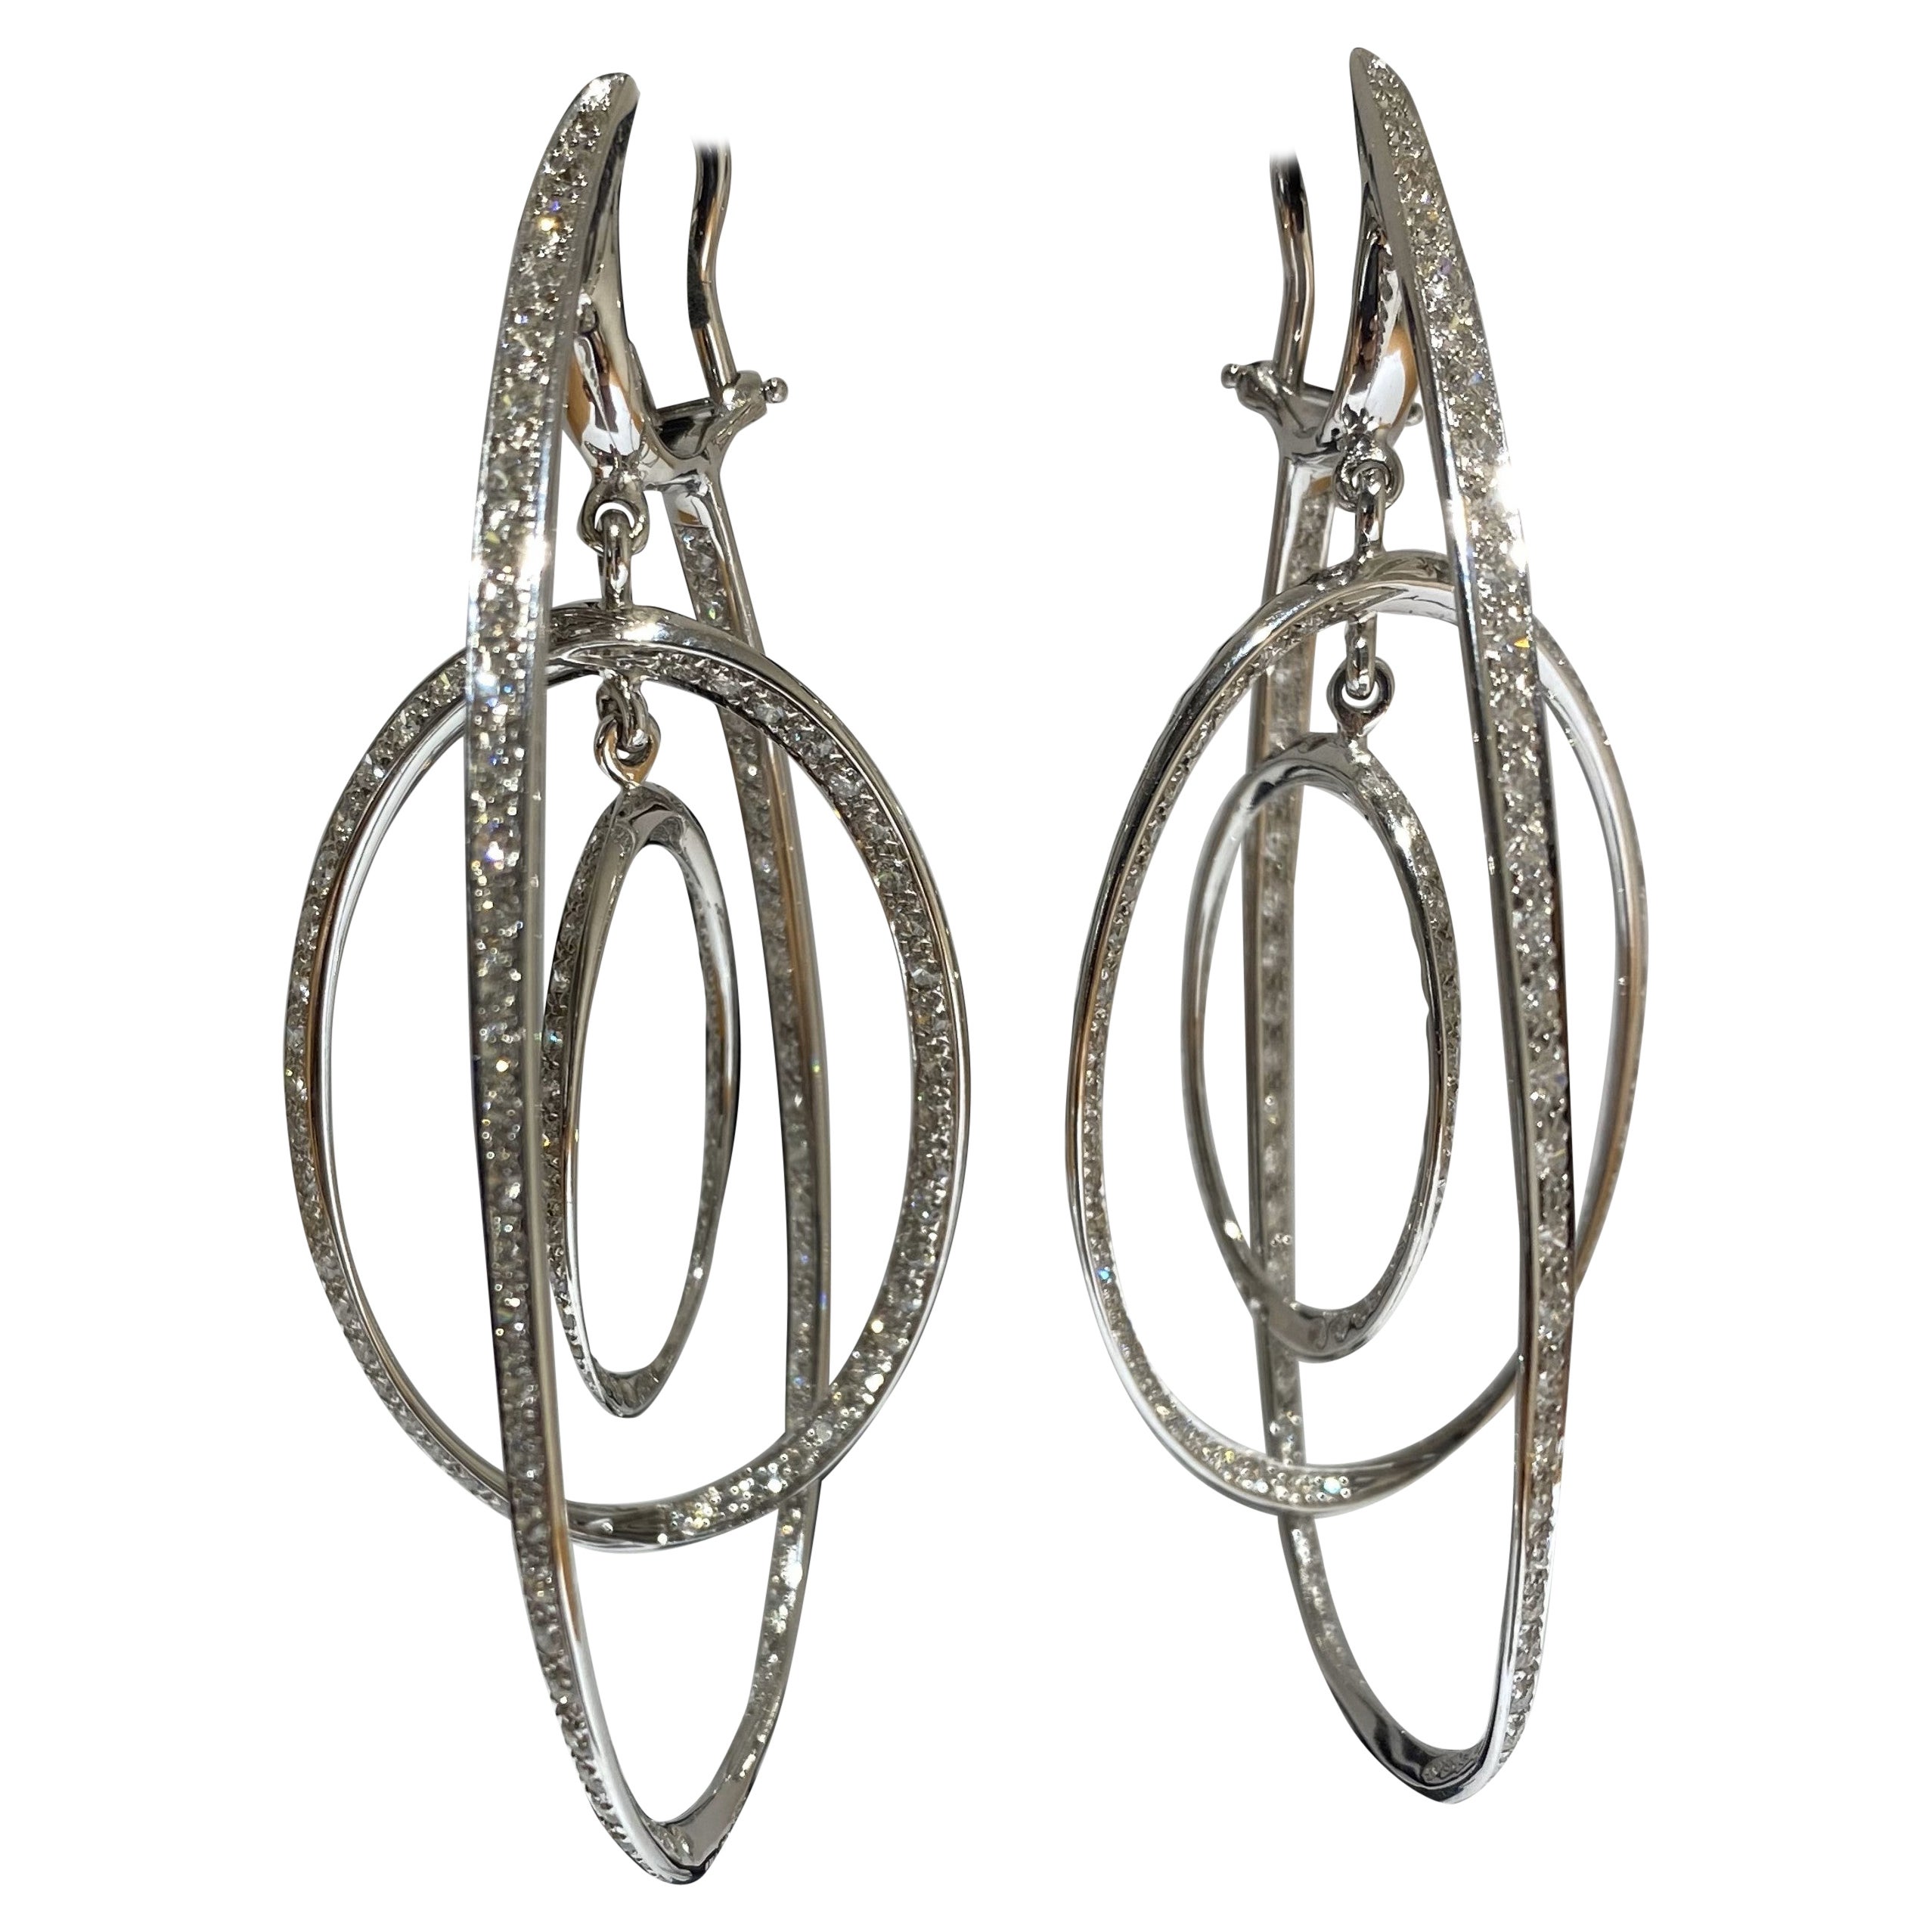 Wir stellen die ASTROLABIO Ohrringe des renommierten italienischen Meisterjuweliers Fulvio Maria Scavia vor. Diese exquisiten Ohrringe, die in Italien in sorgfältiger Handarbeit hergestellt werden, zeigen die unvergleichliche Kunstfertigkeit des